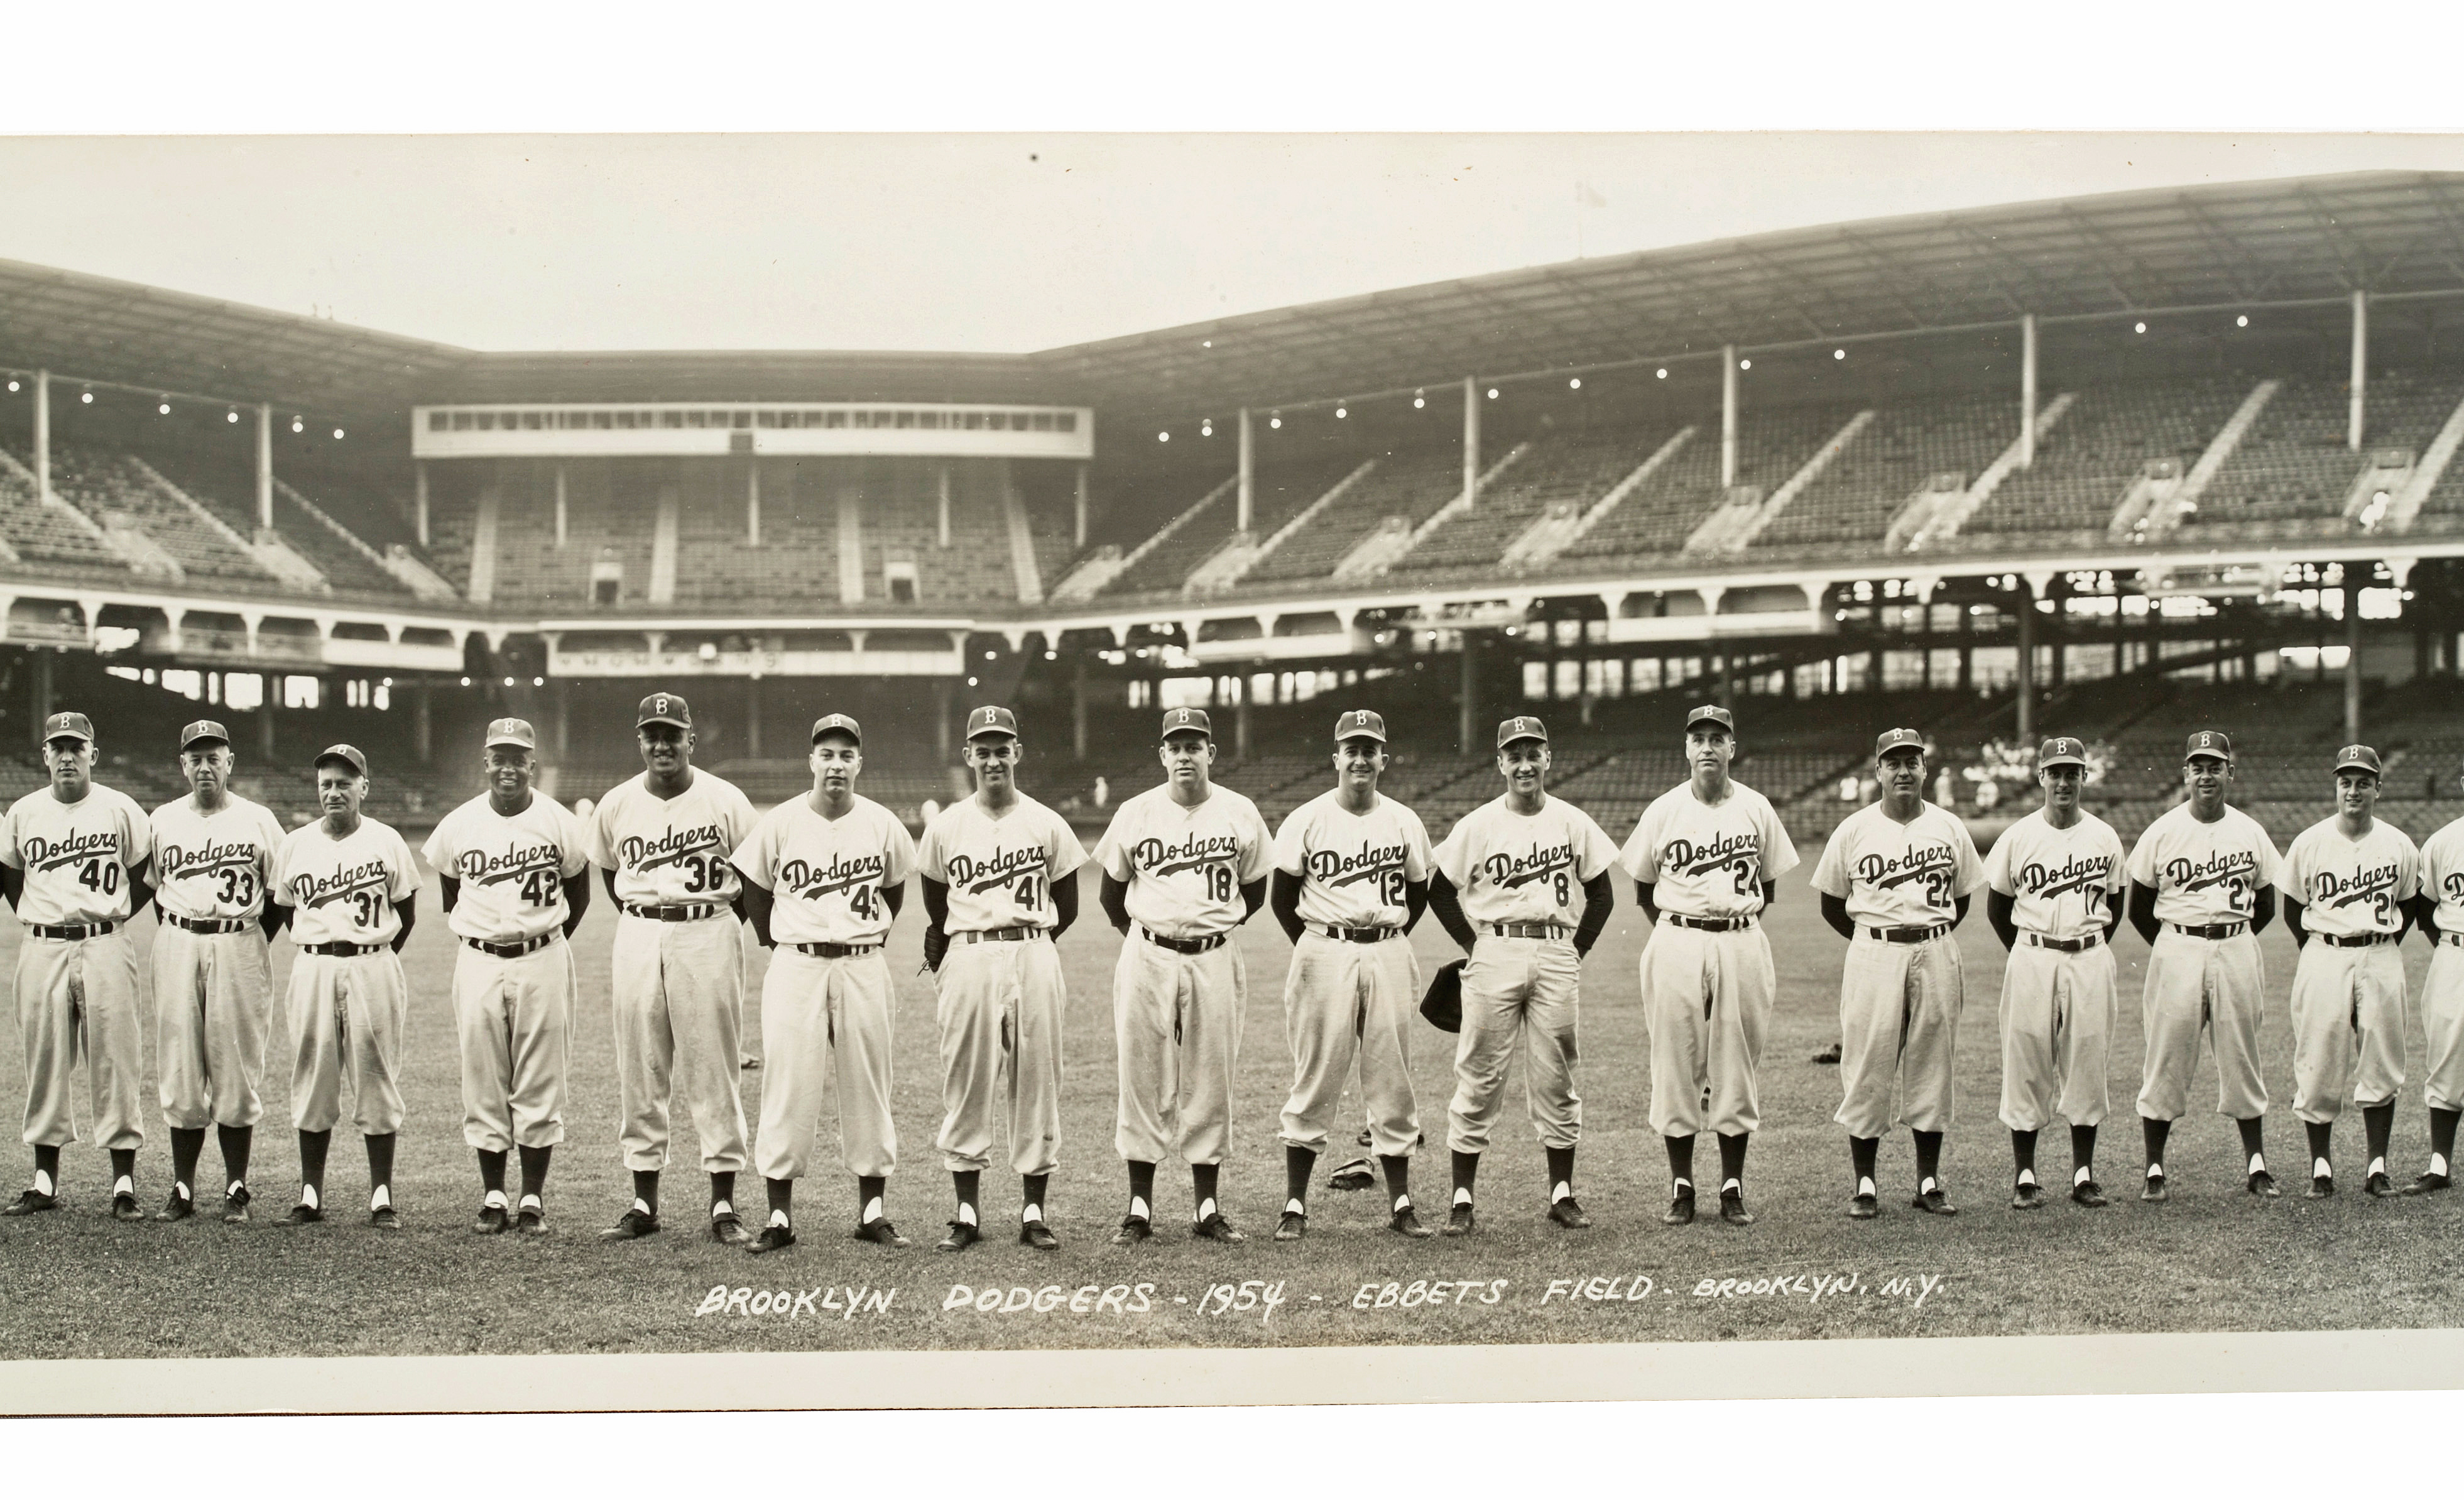  Walter Alston Brooklyn Dodgers 8x10 Photo : Sports